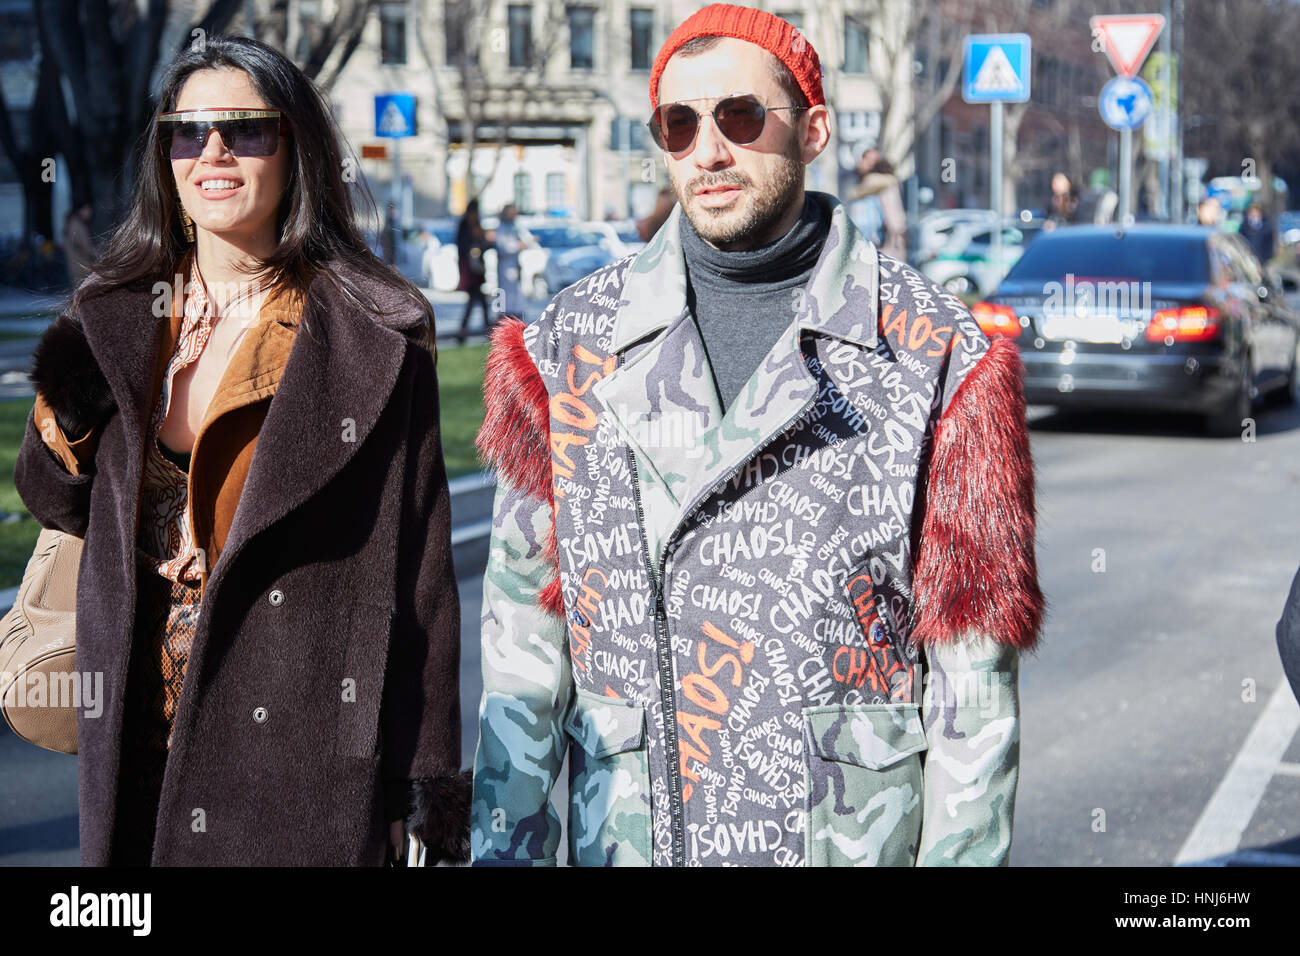 MILAN - janvier 17 : La femme et l'homme marchant à Giorgio Armani fashion show, Milan Fashion Week street style le 17 janvier 2017 à Milan. Banque D'Images